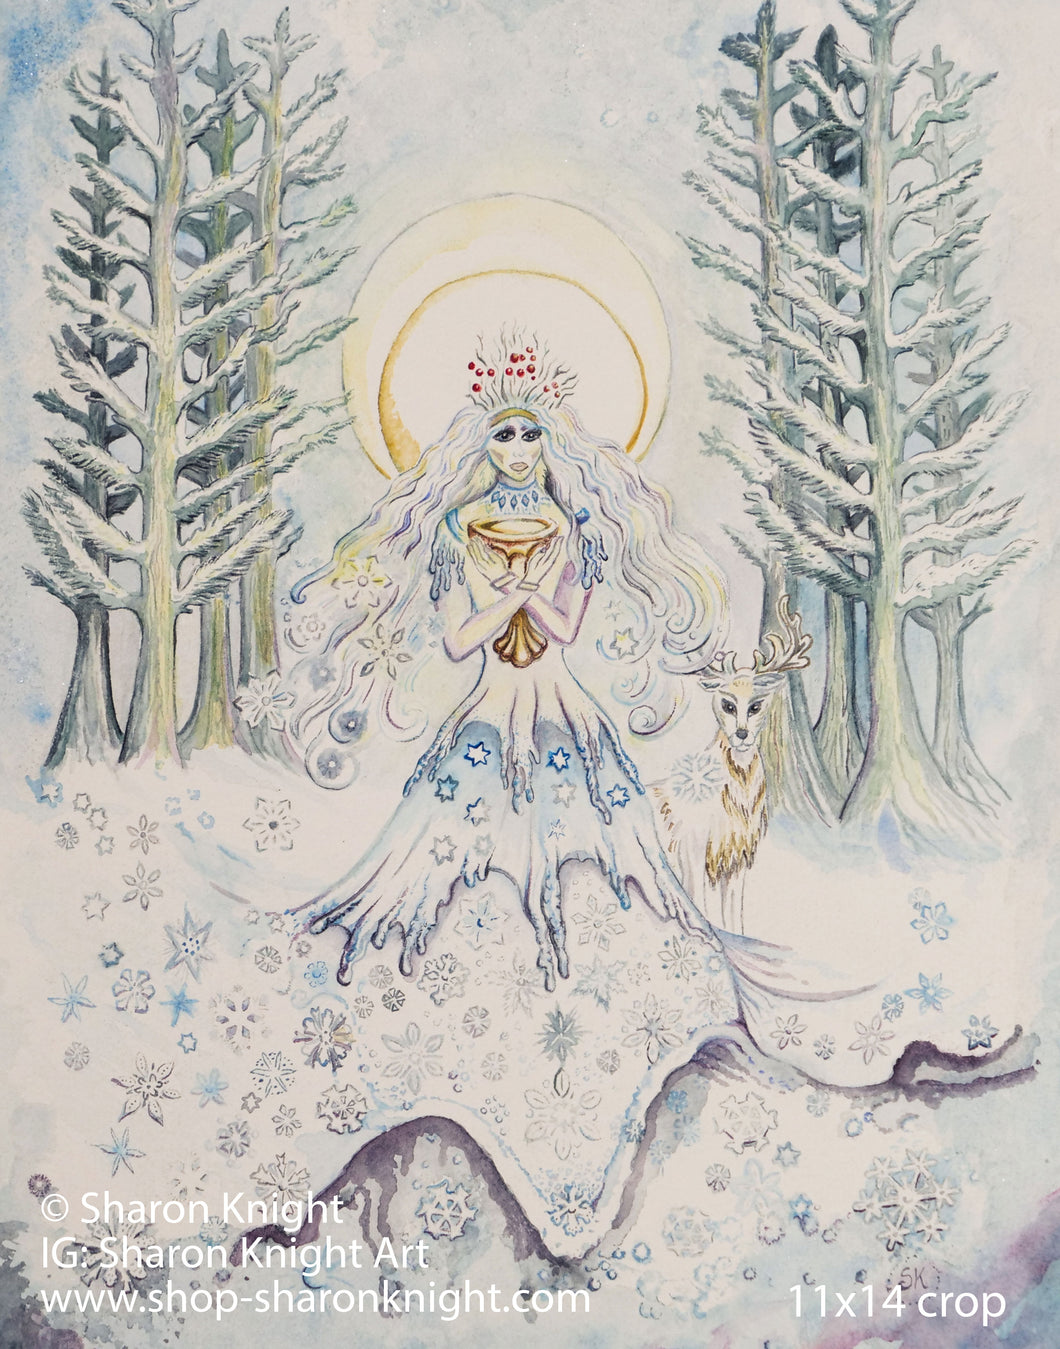 The Winter Queen - Print